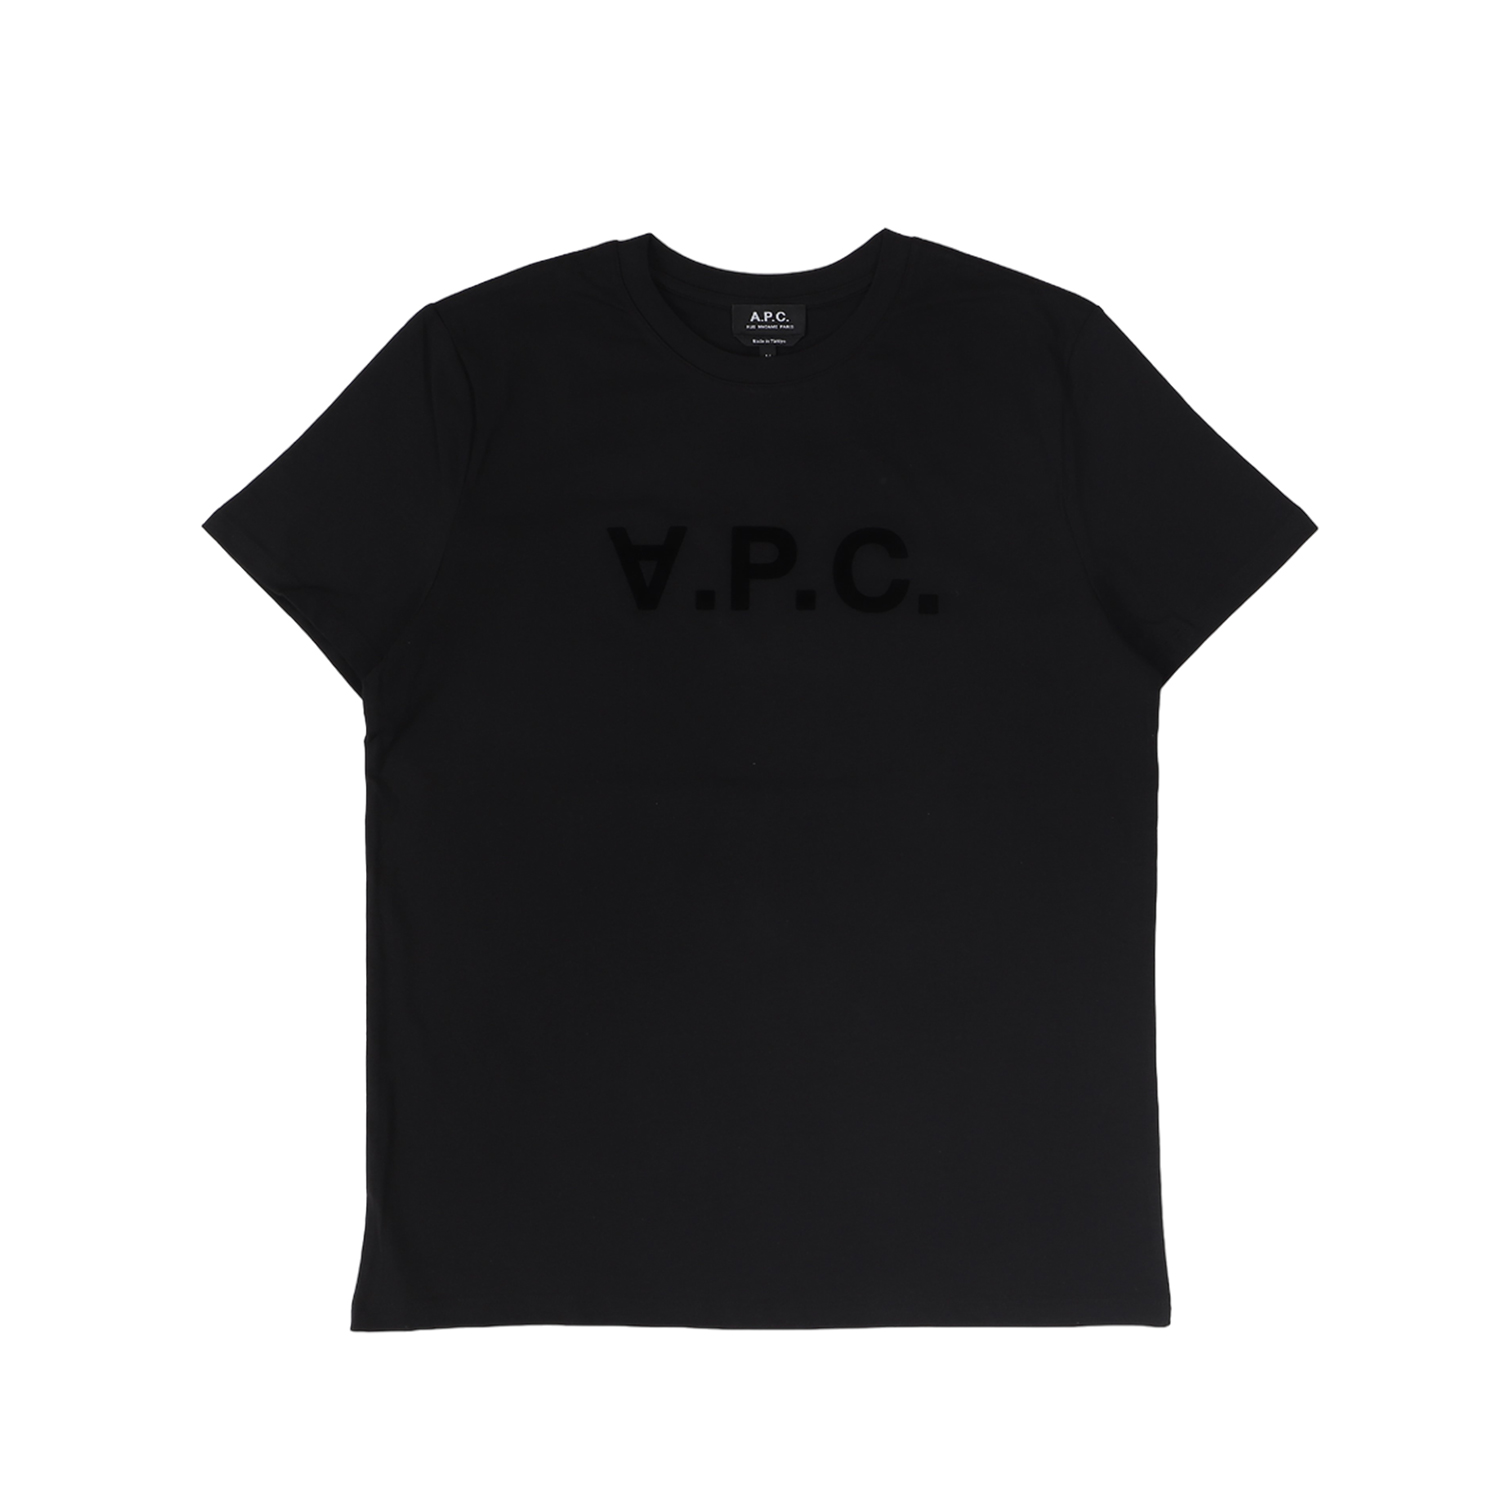 アーペーセー A.P.C. Tシャツ 半袖 メンズ V.P.C. H ブラック ベージュ ダーク ネ...